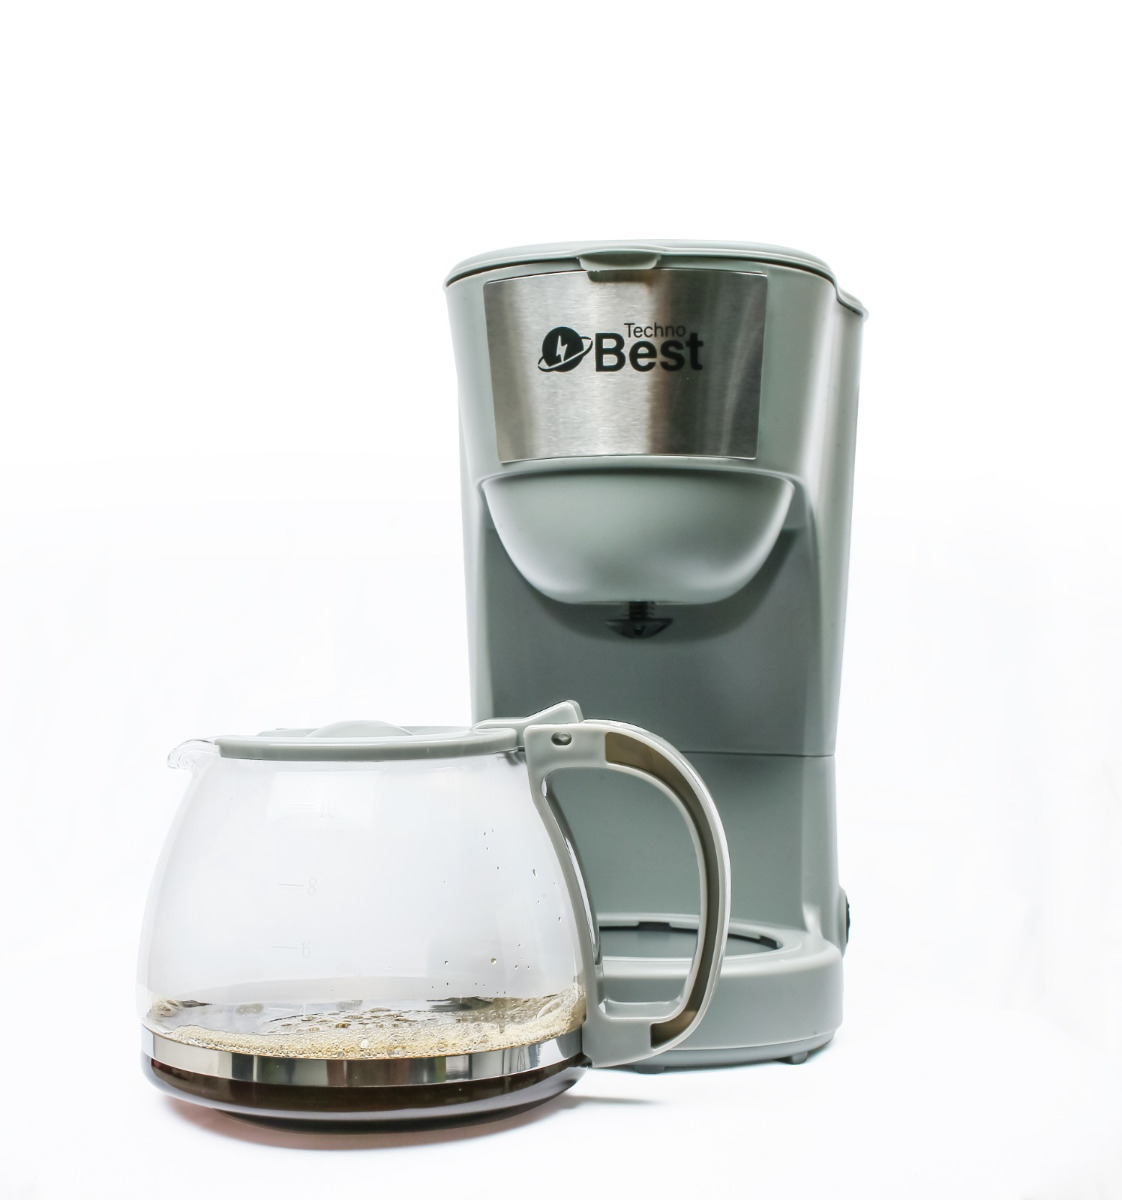  تكنو بيست صانعة قهوة, 1.25 لتر, 750 واط, رمادي, BCM-002